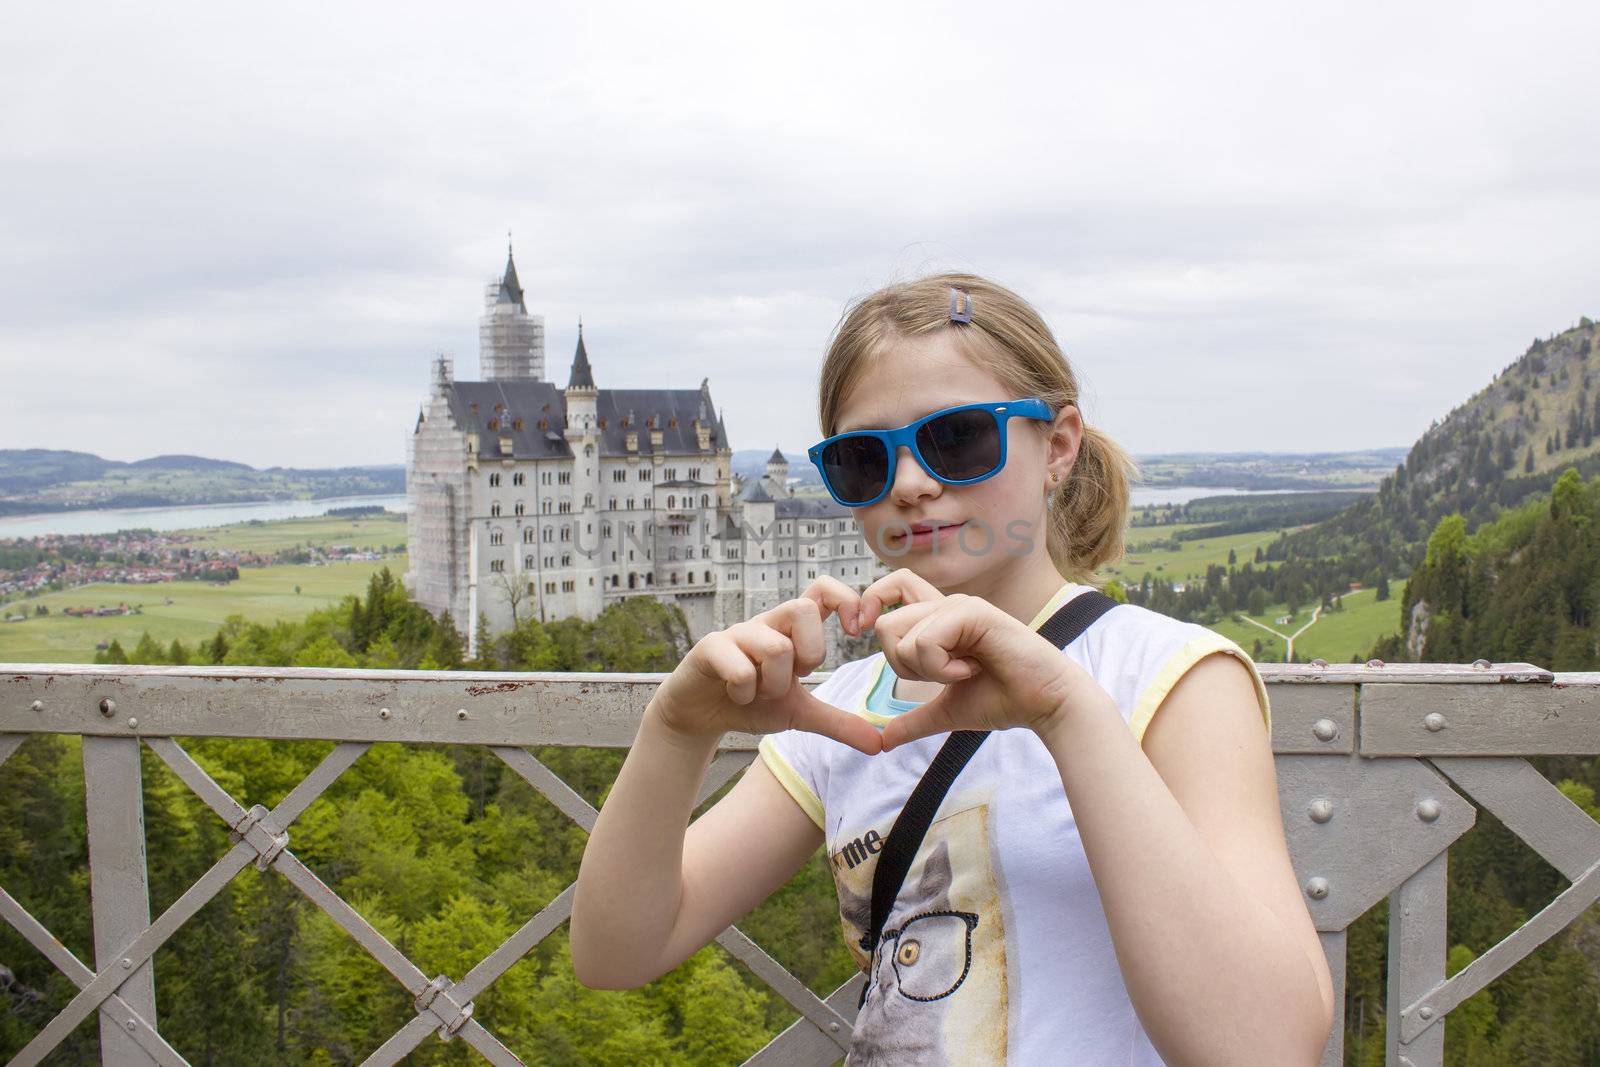 small tourist on the bridge, the view of Neuschwanstein Castle by miradrozdowski